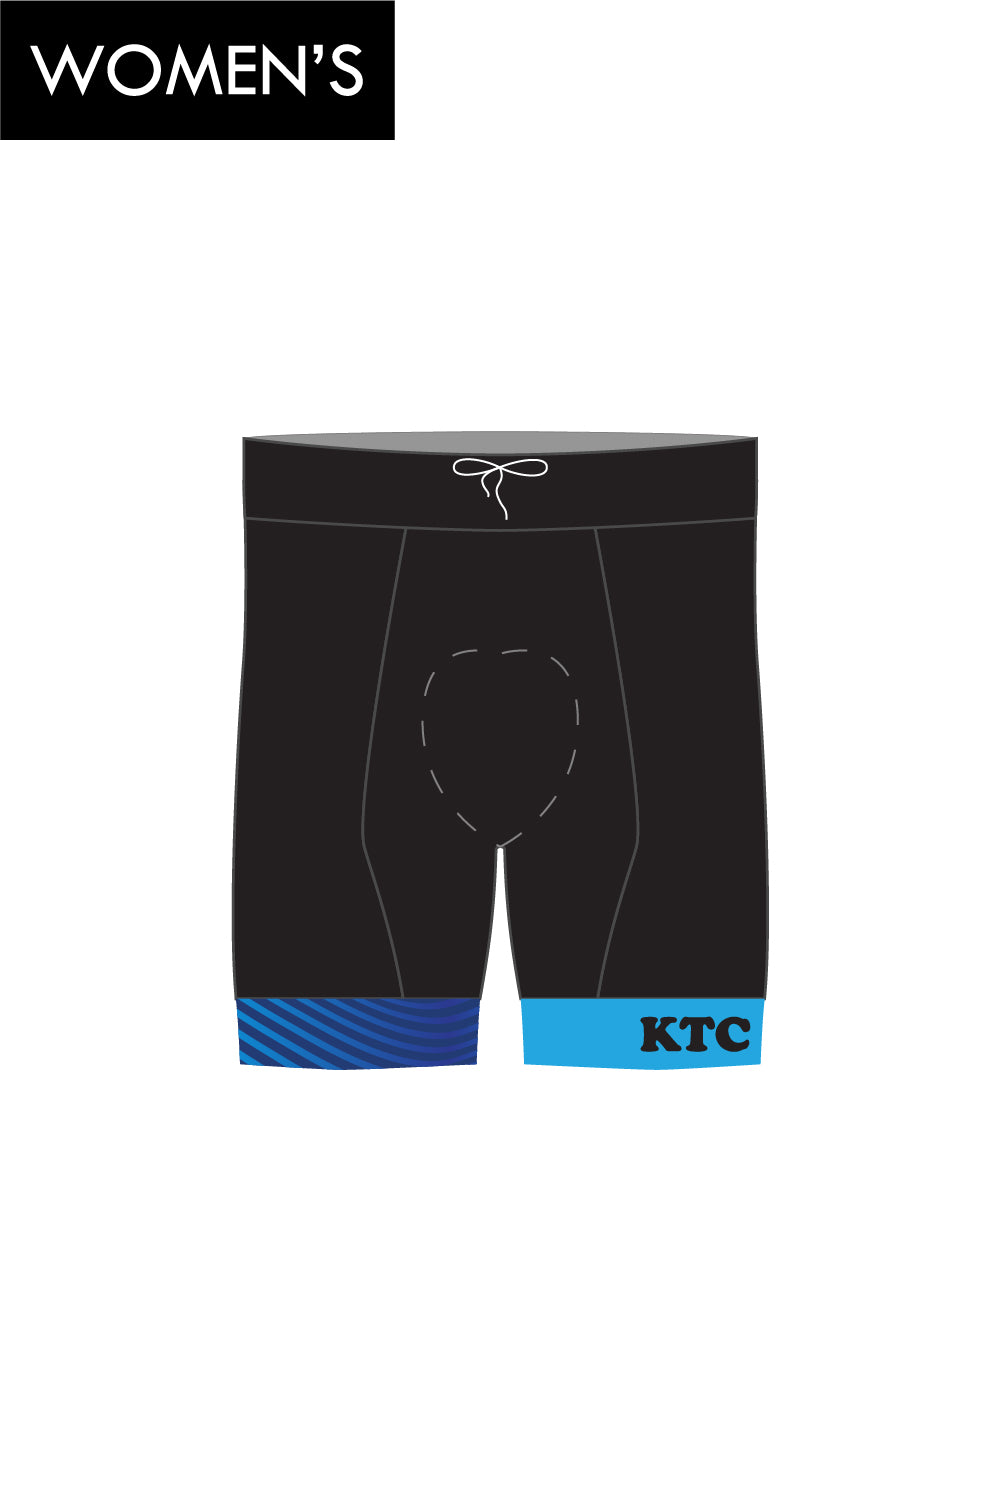 KTC Women's Tri Shorts